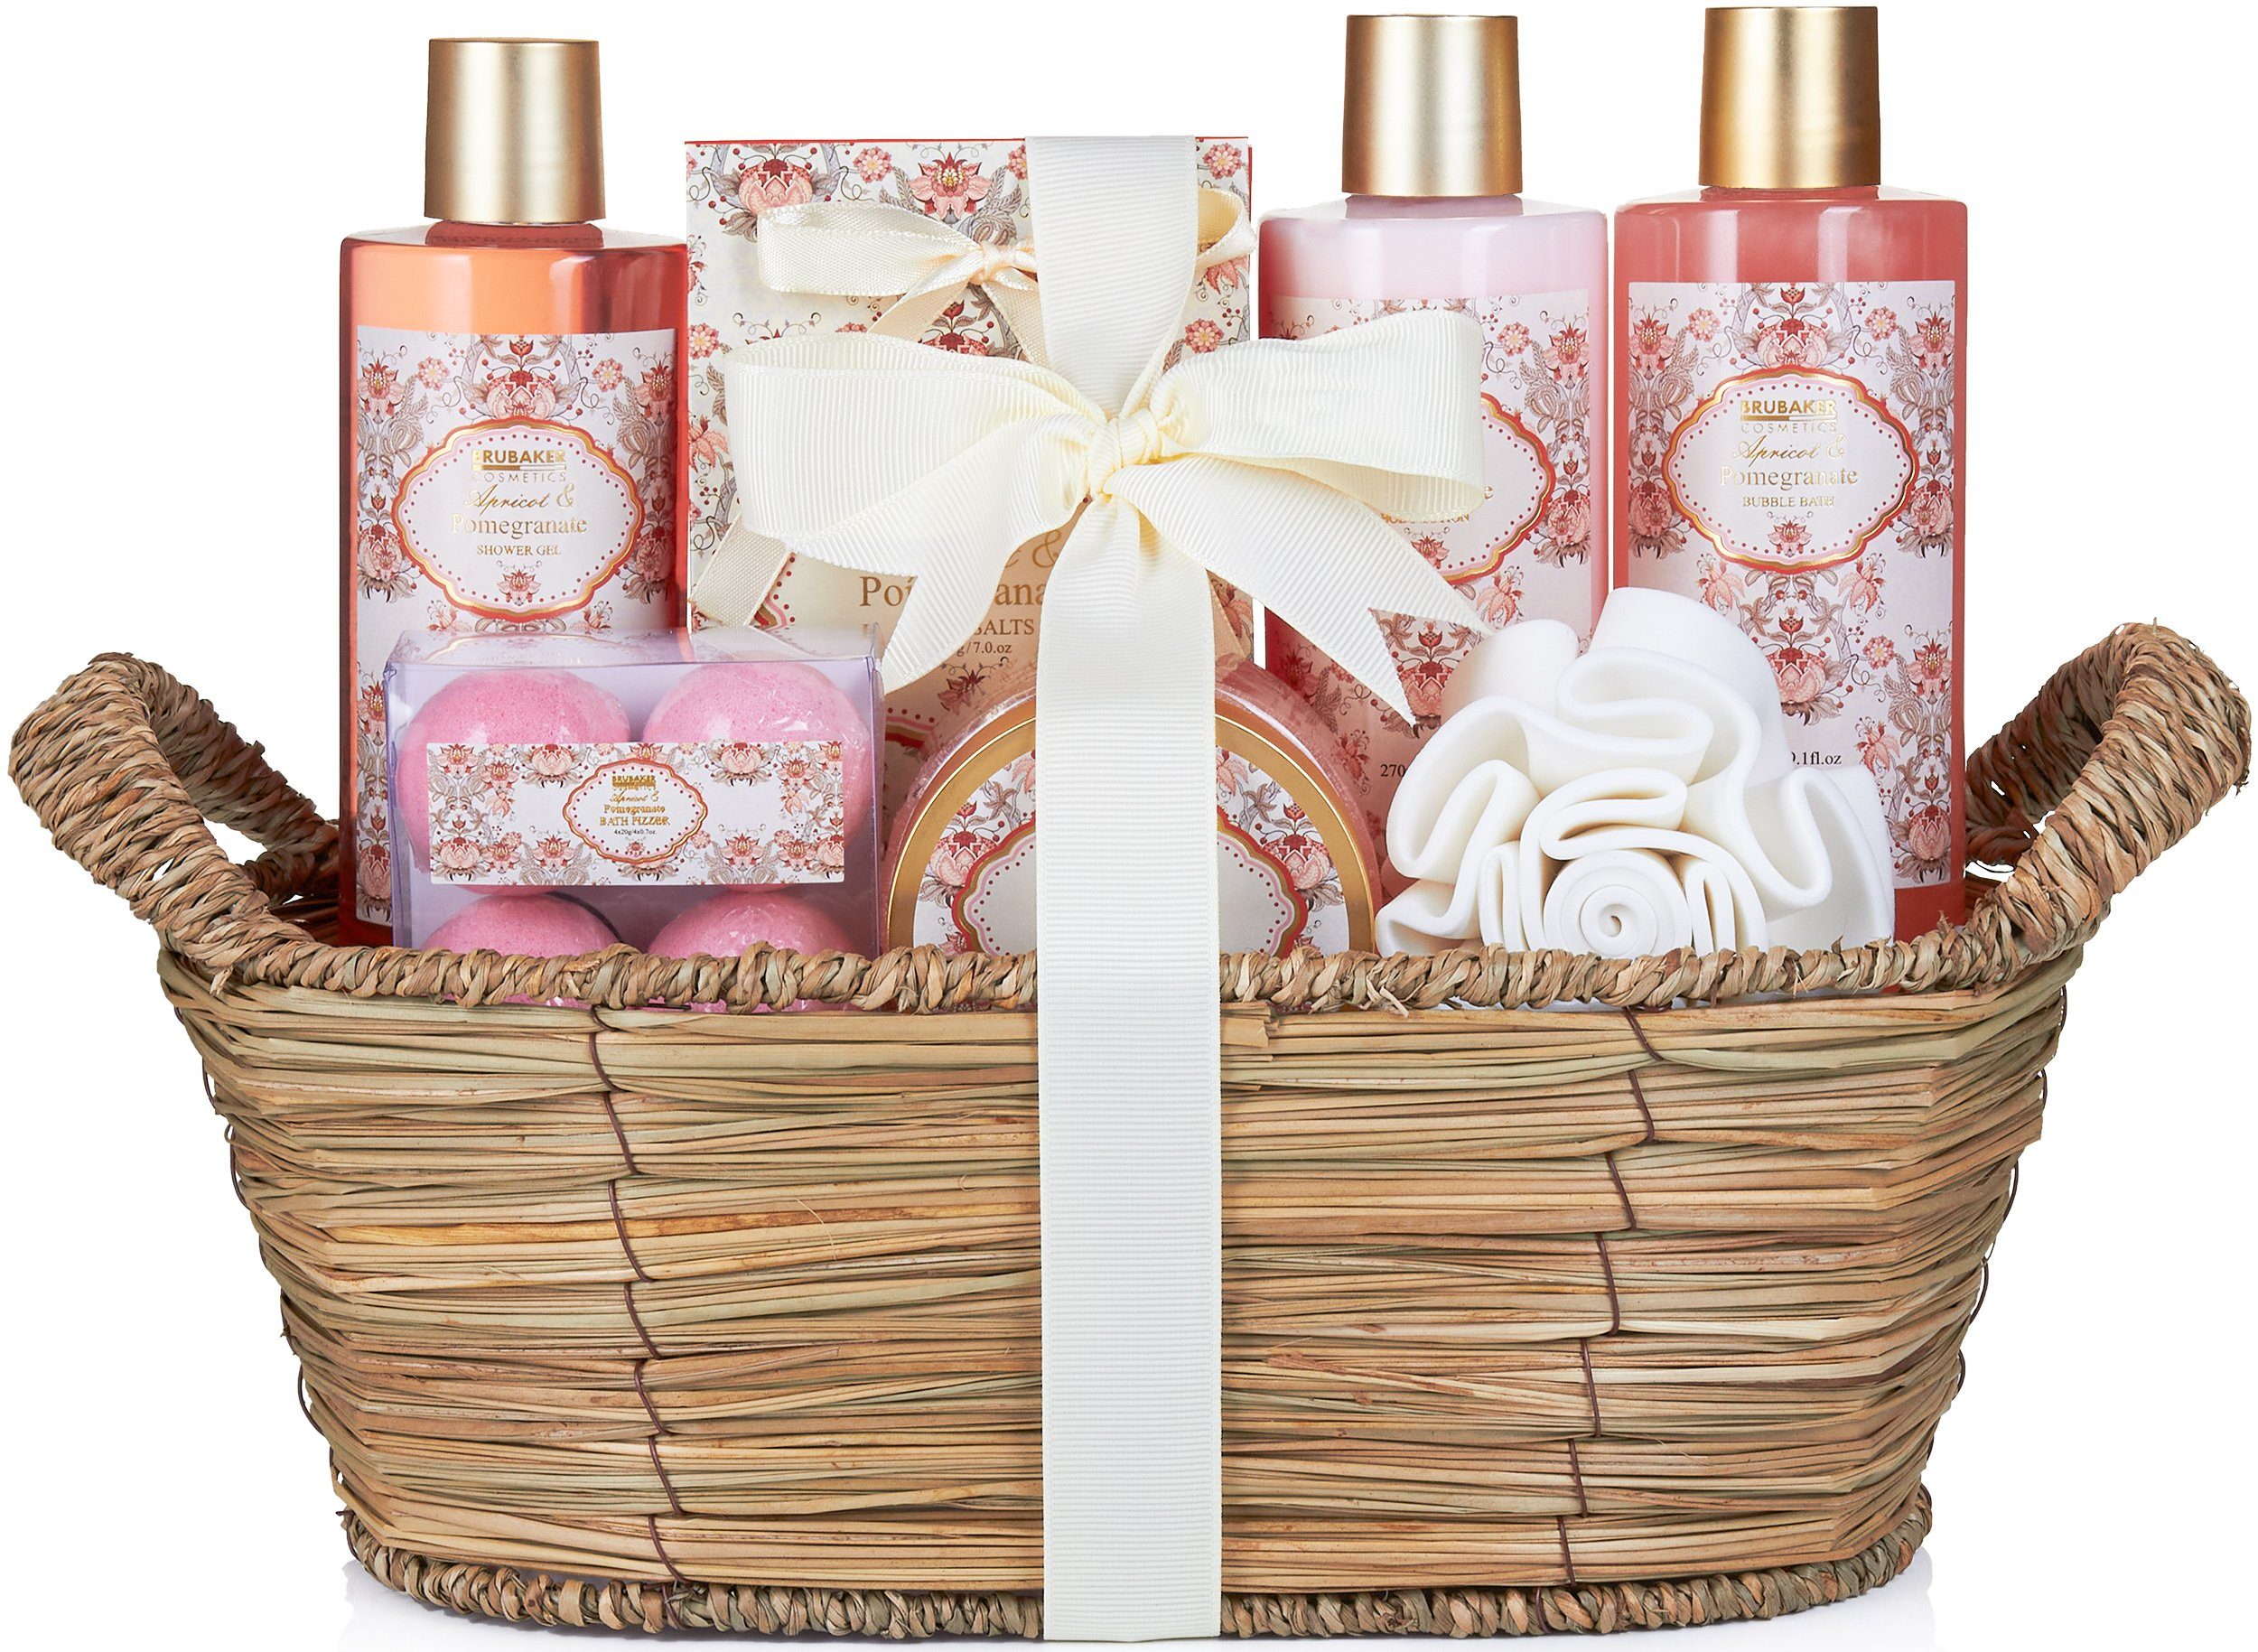 BRUBAKER Hautreinigungs-Set Bade- und Dusch Set, 11-tlg., Geschenkset im Flechtkorb, Aprikose und Granatapfel Duft